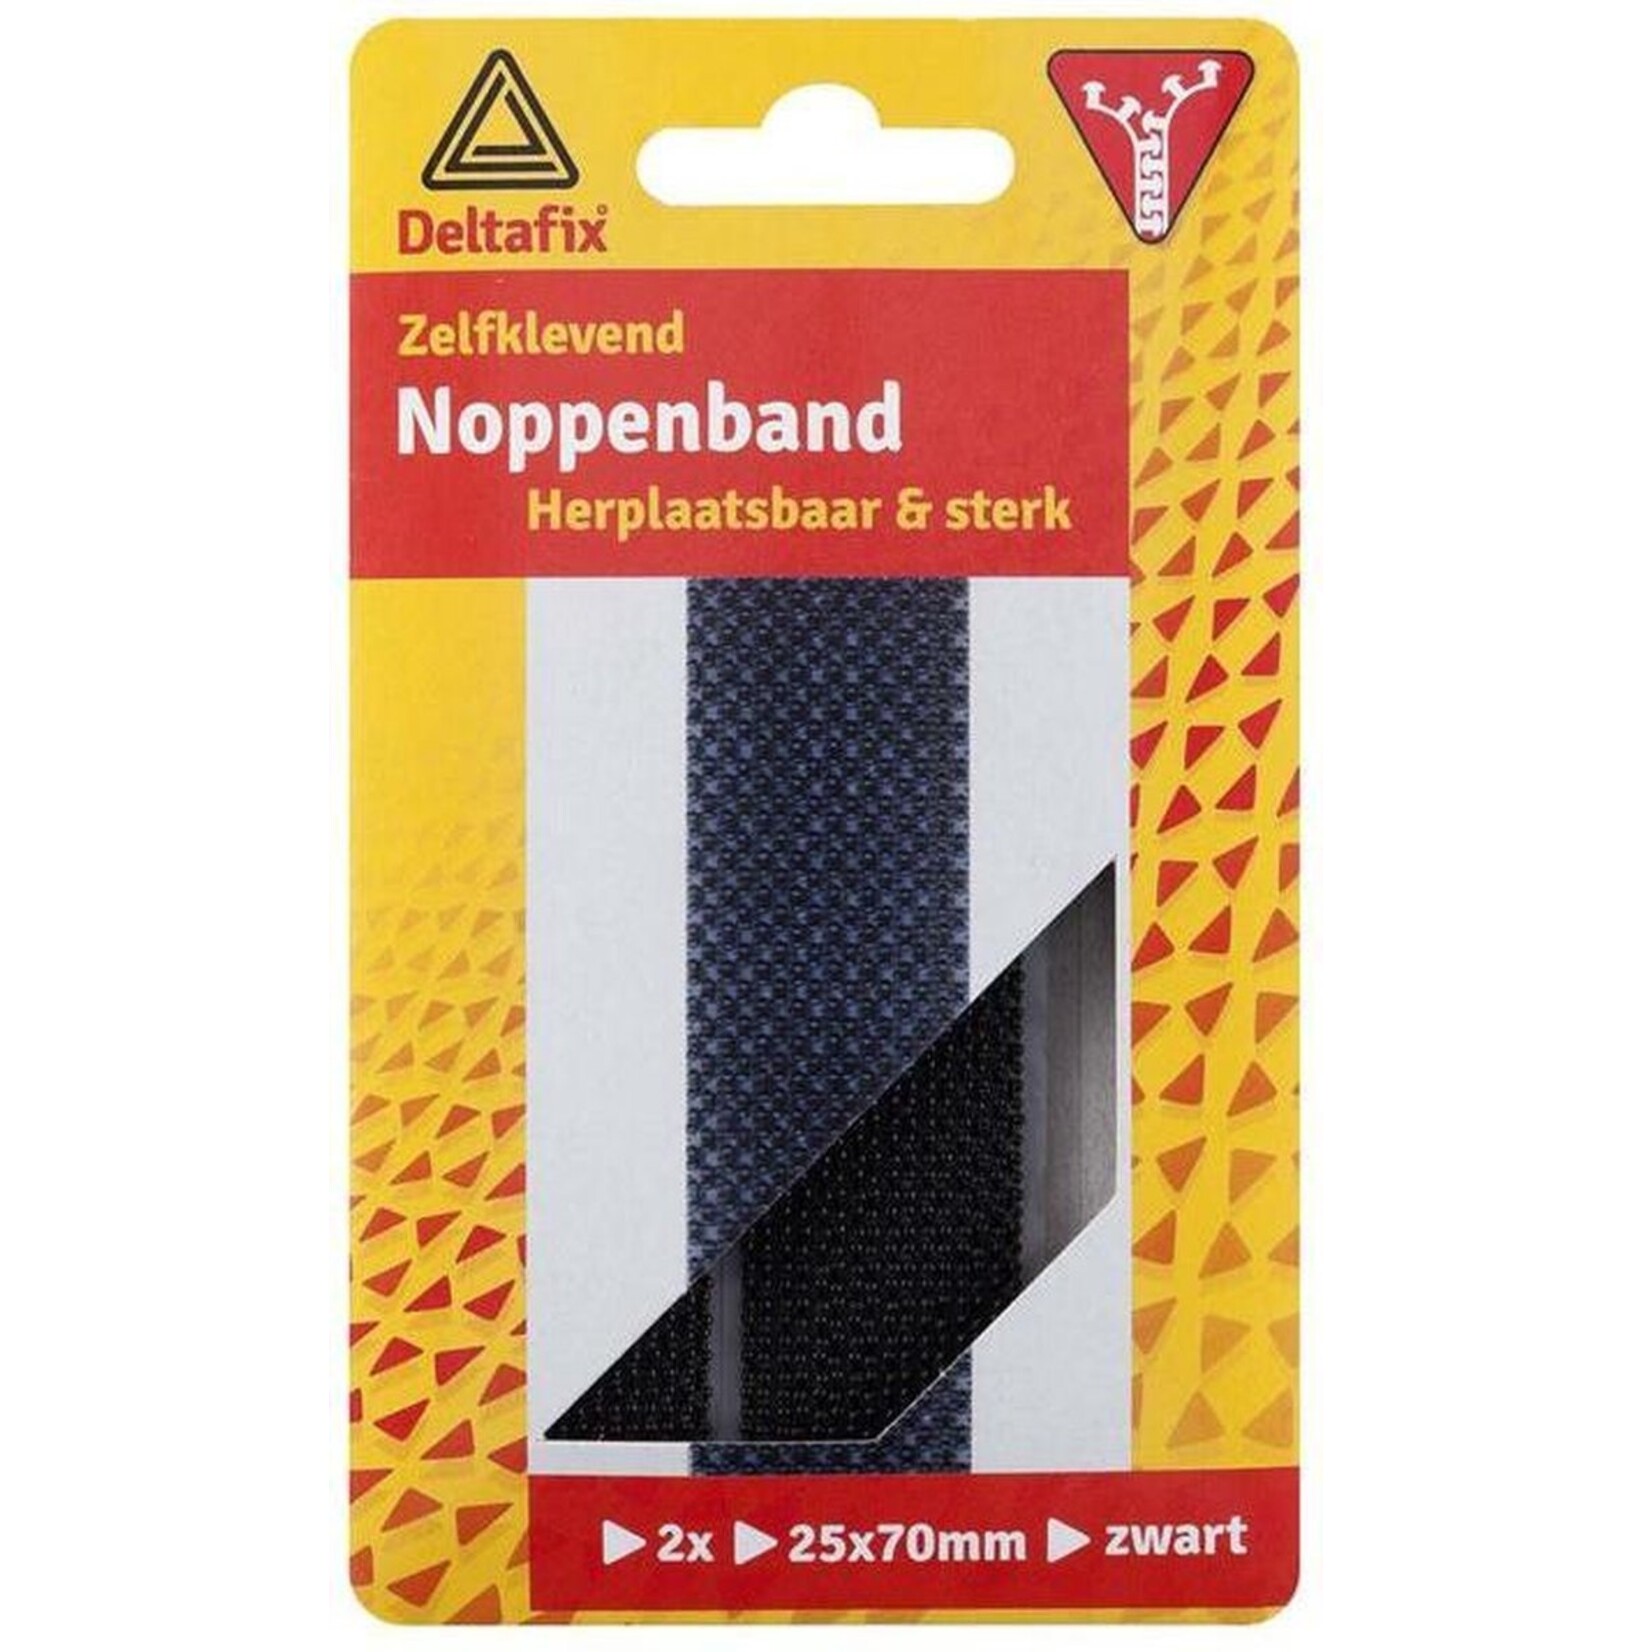 Deltafix Noppenband zelfklevend  2-delig - herplaatsbaar  70 x 25 mm zwart